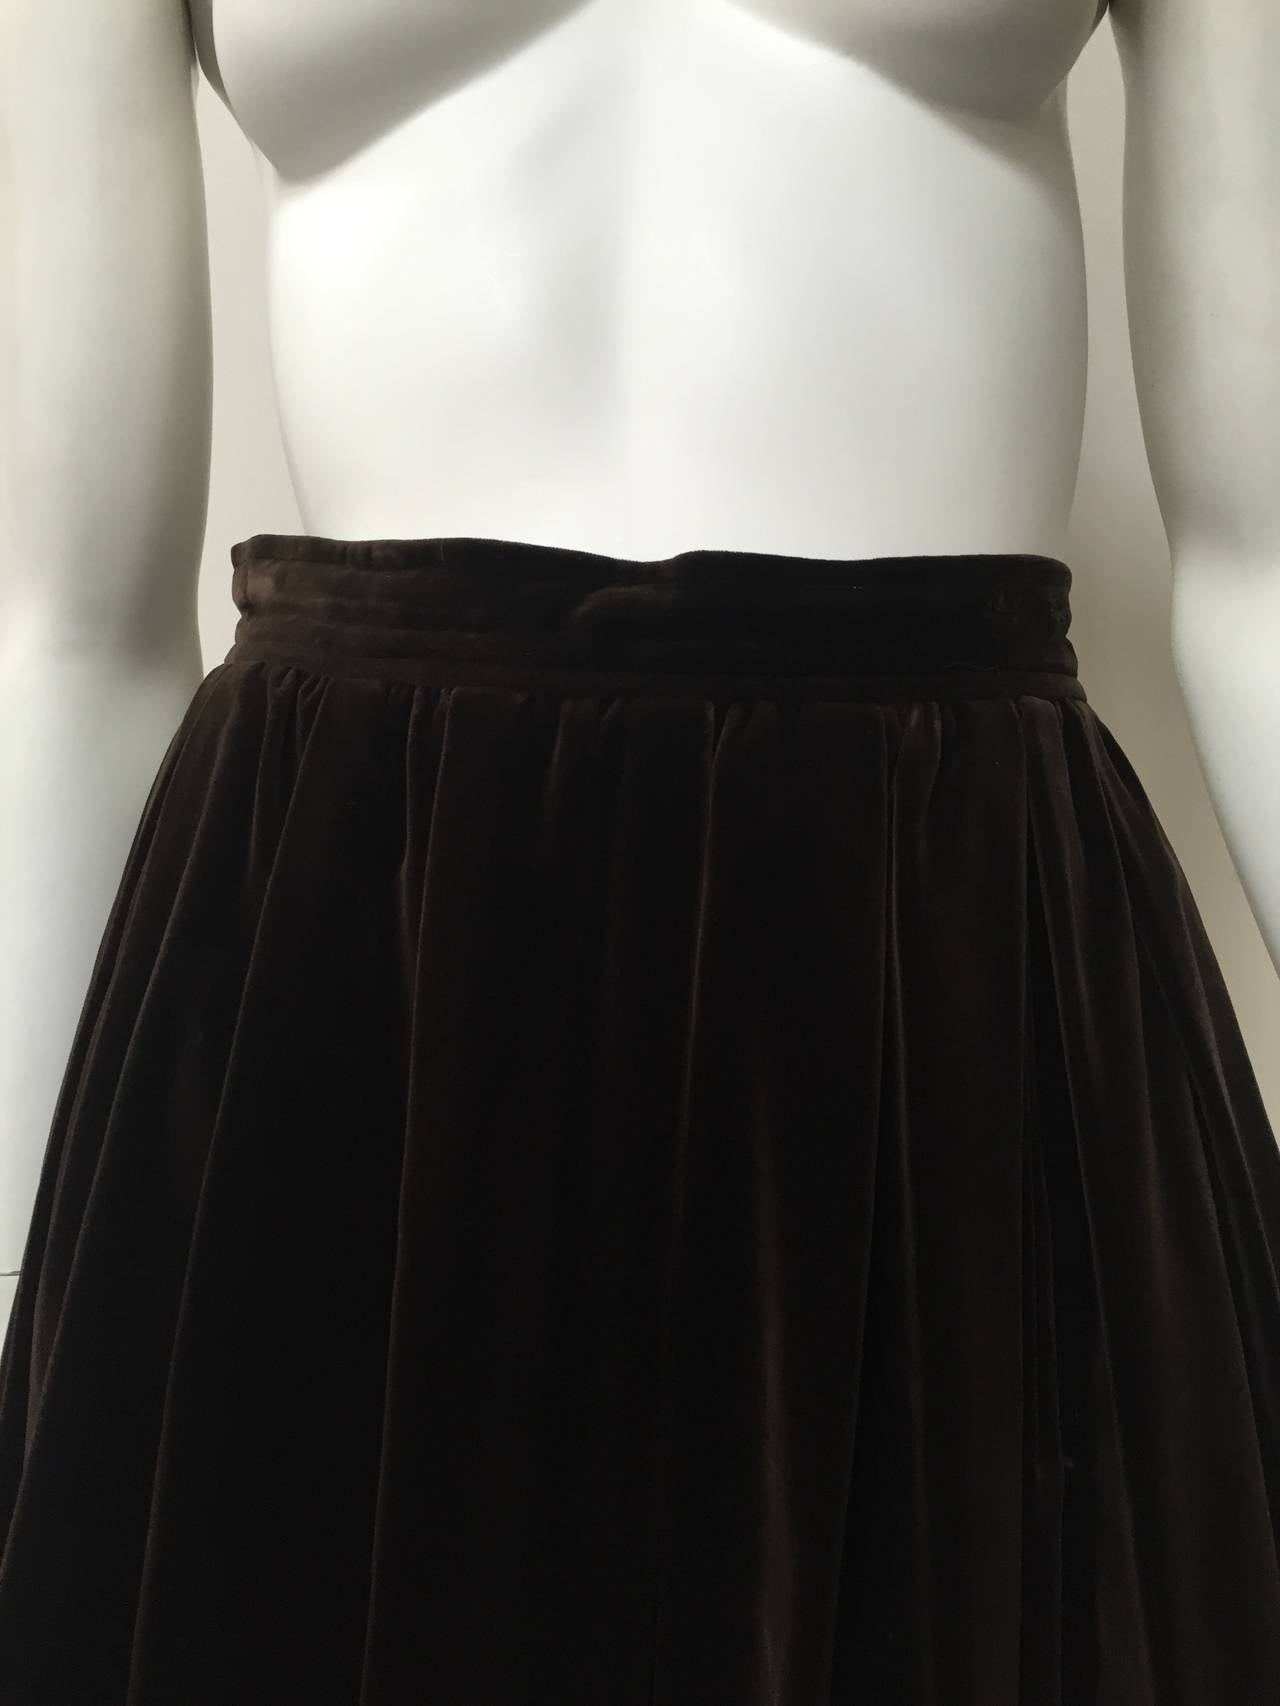 Women's Saint Laurent Rive Gauche 70s velvet skirt with pockets size 6.